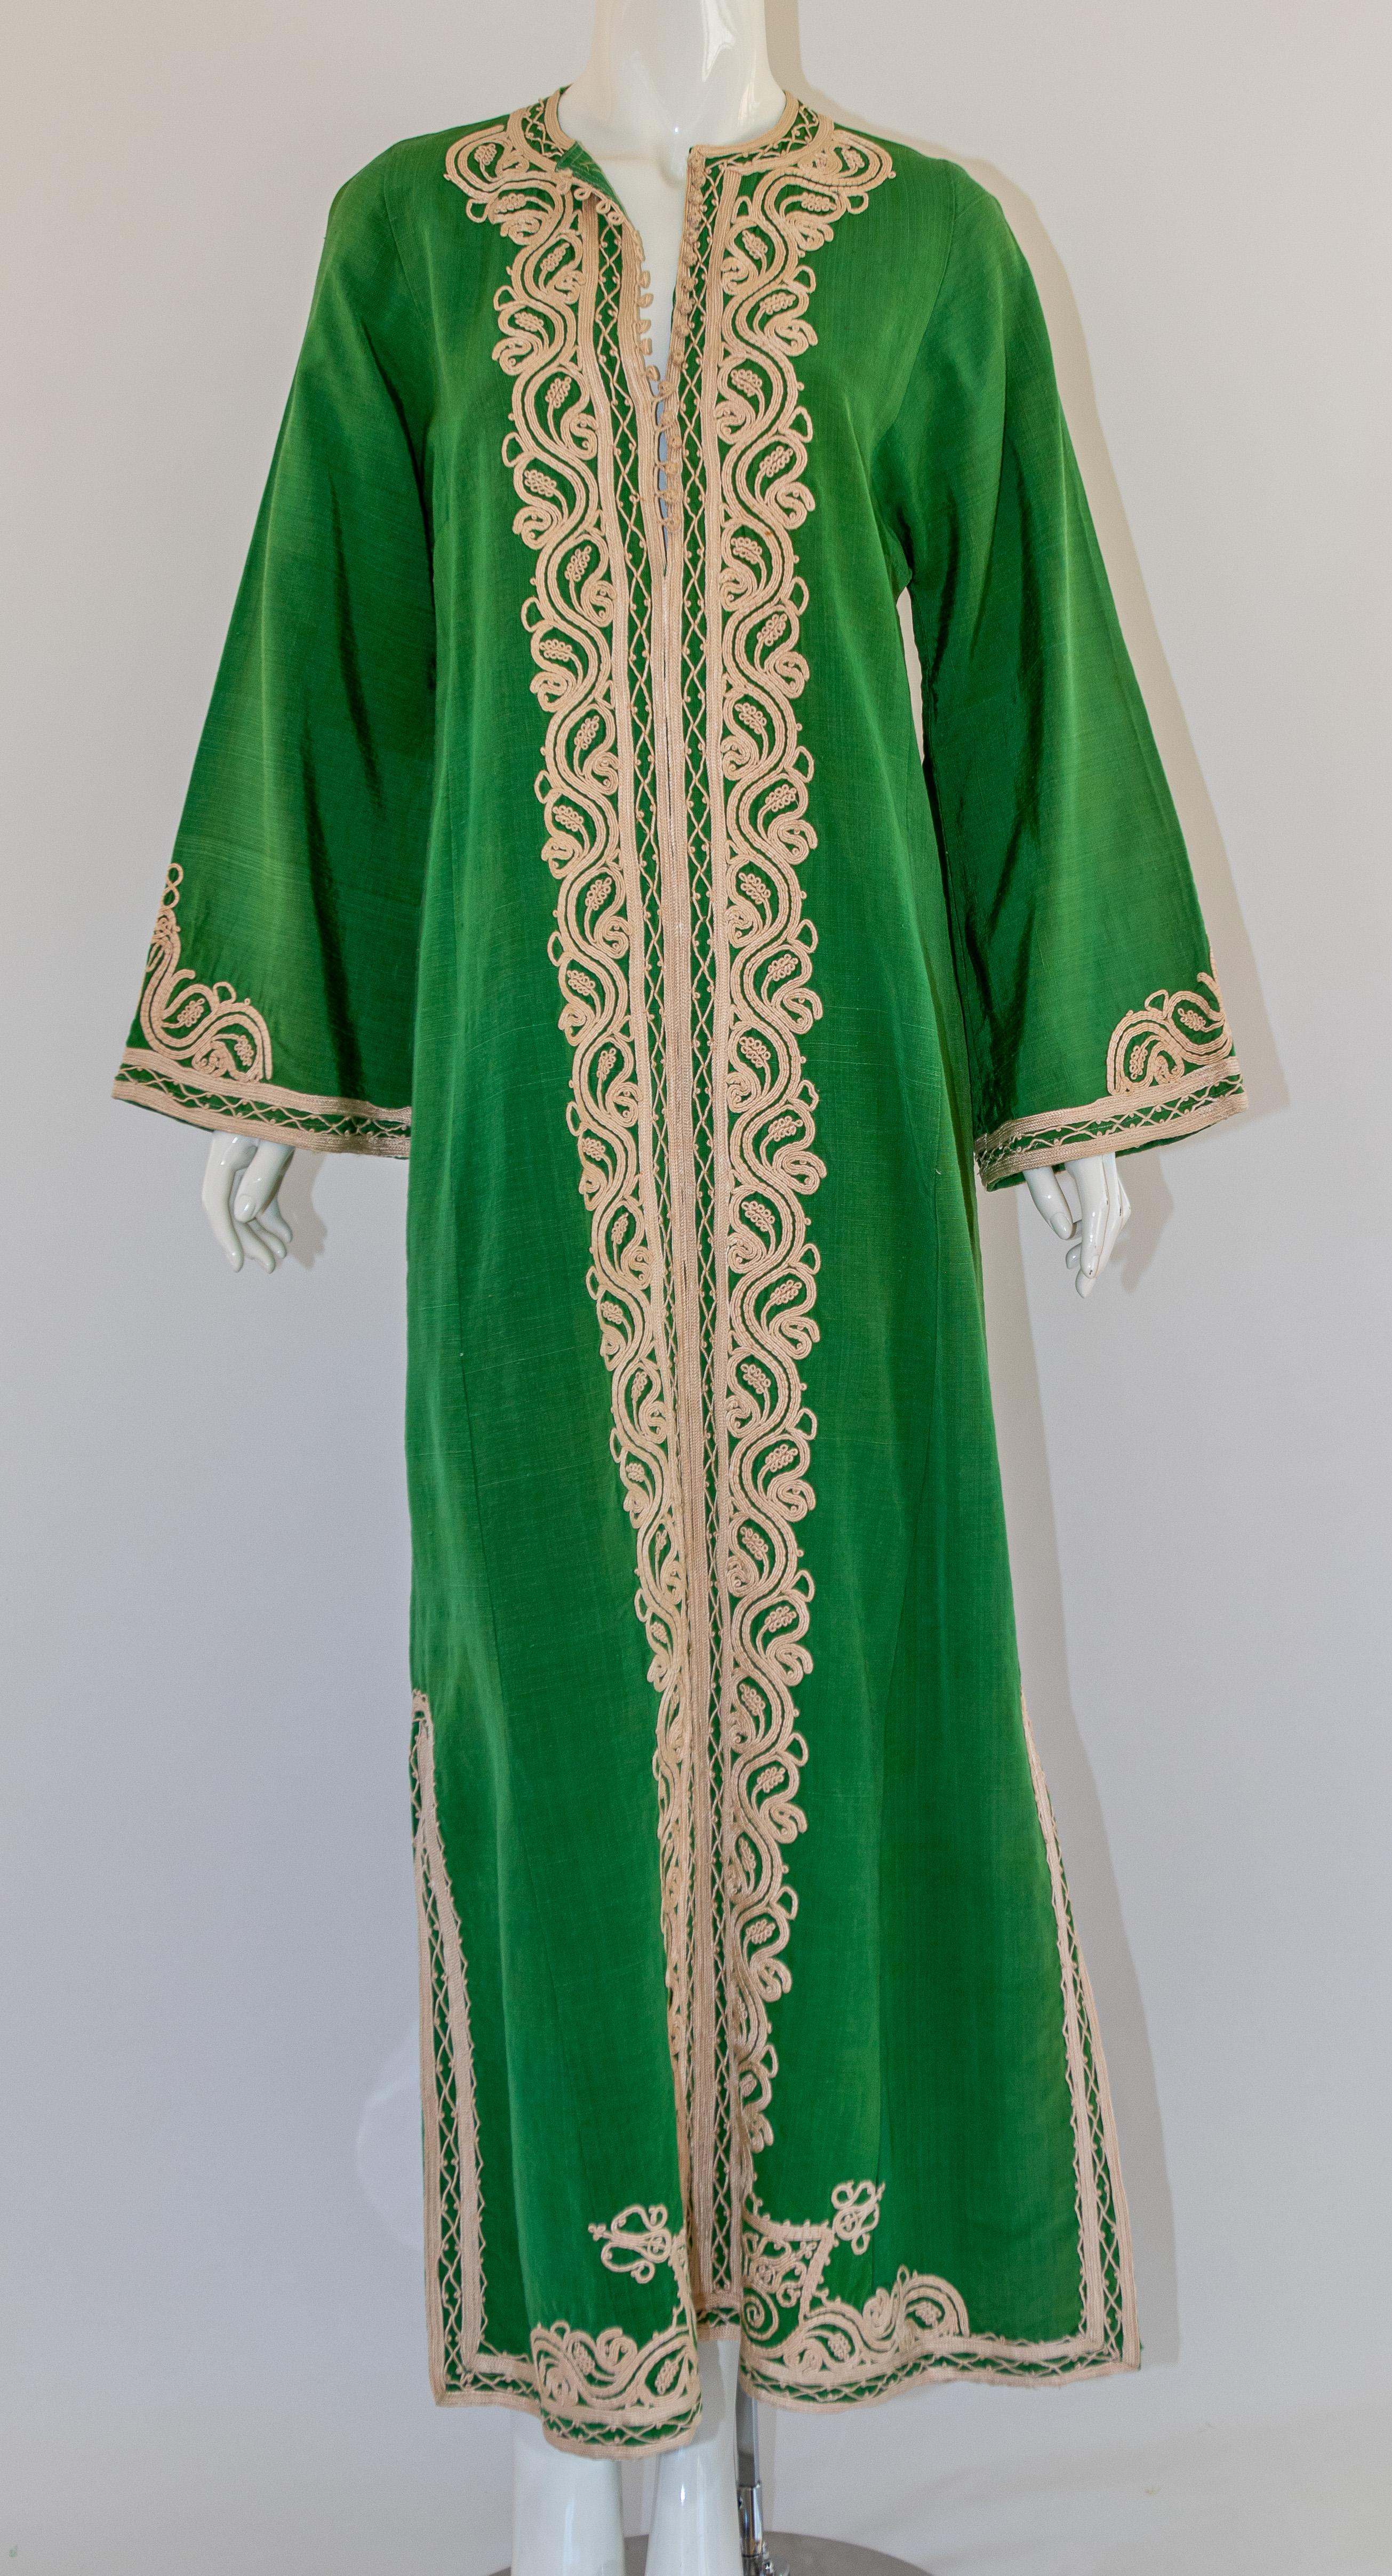 Élégant caftan marocain vintage en coton vert brodé d'un motif de fils blancs.  
Le kaftan présente un encolure traditionnelle, avec des fentes latérales fendues et des manches embellies légèrement cannelées. 
Elle se ferme à l'avant avec des